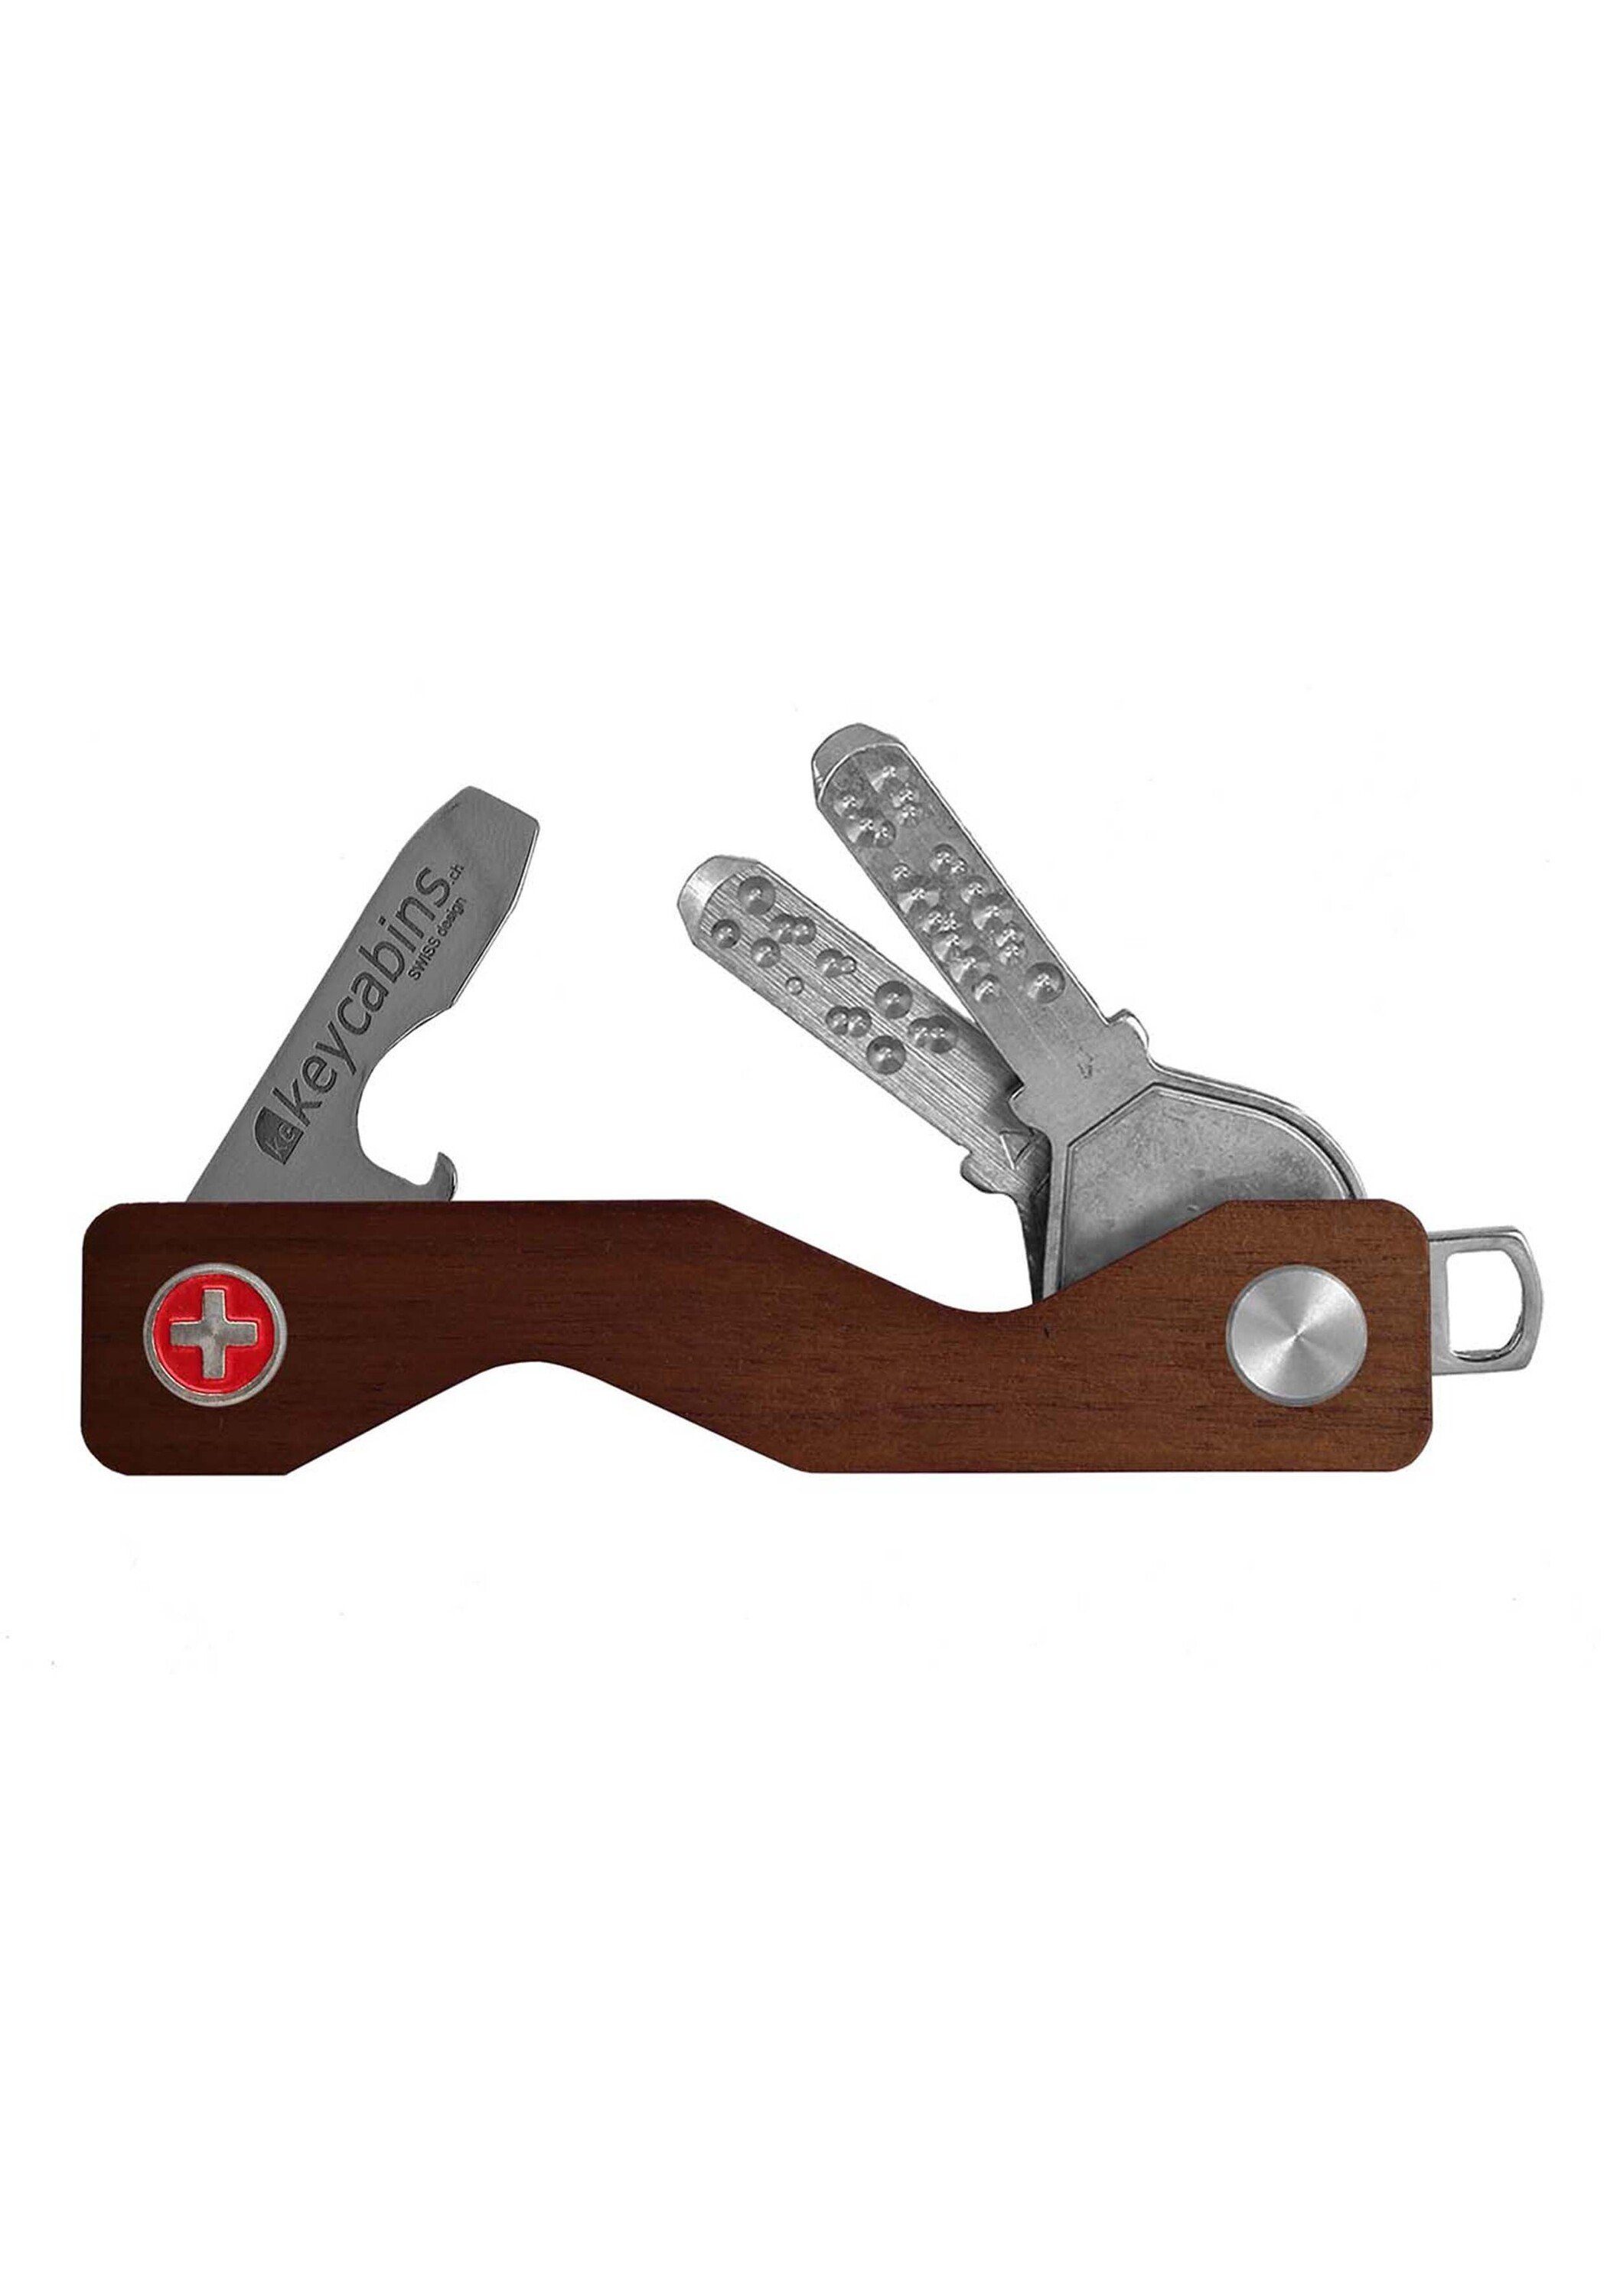 Versandkostenfreies Fest ✶ Im Gange! keycabins Wood SWISS made Schlüsselanhänger S3, braun